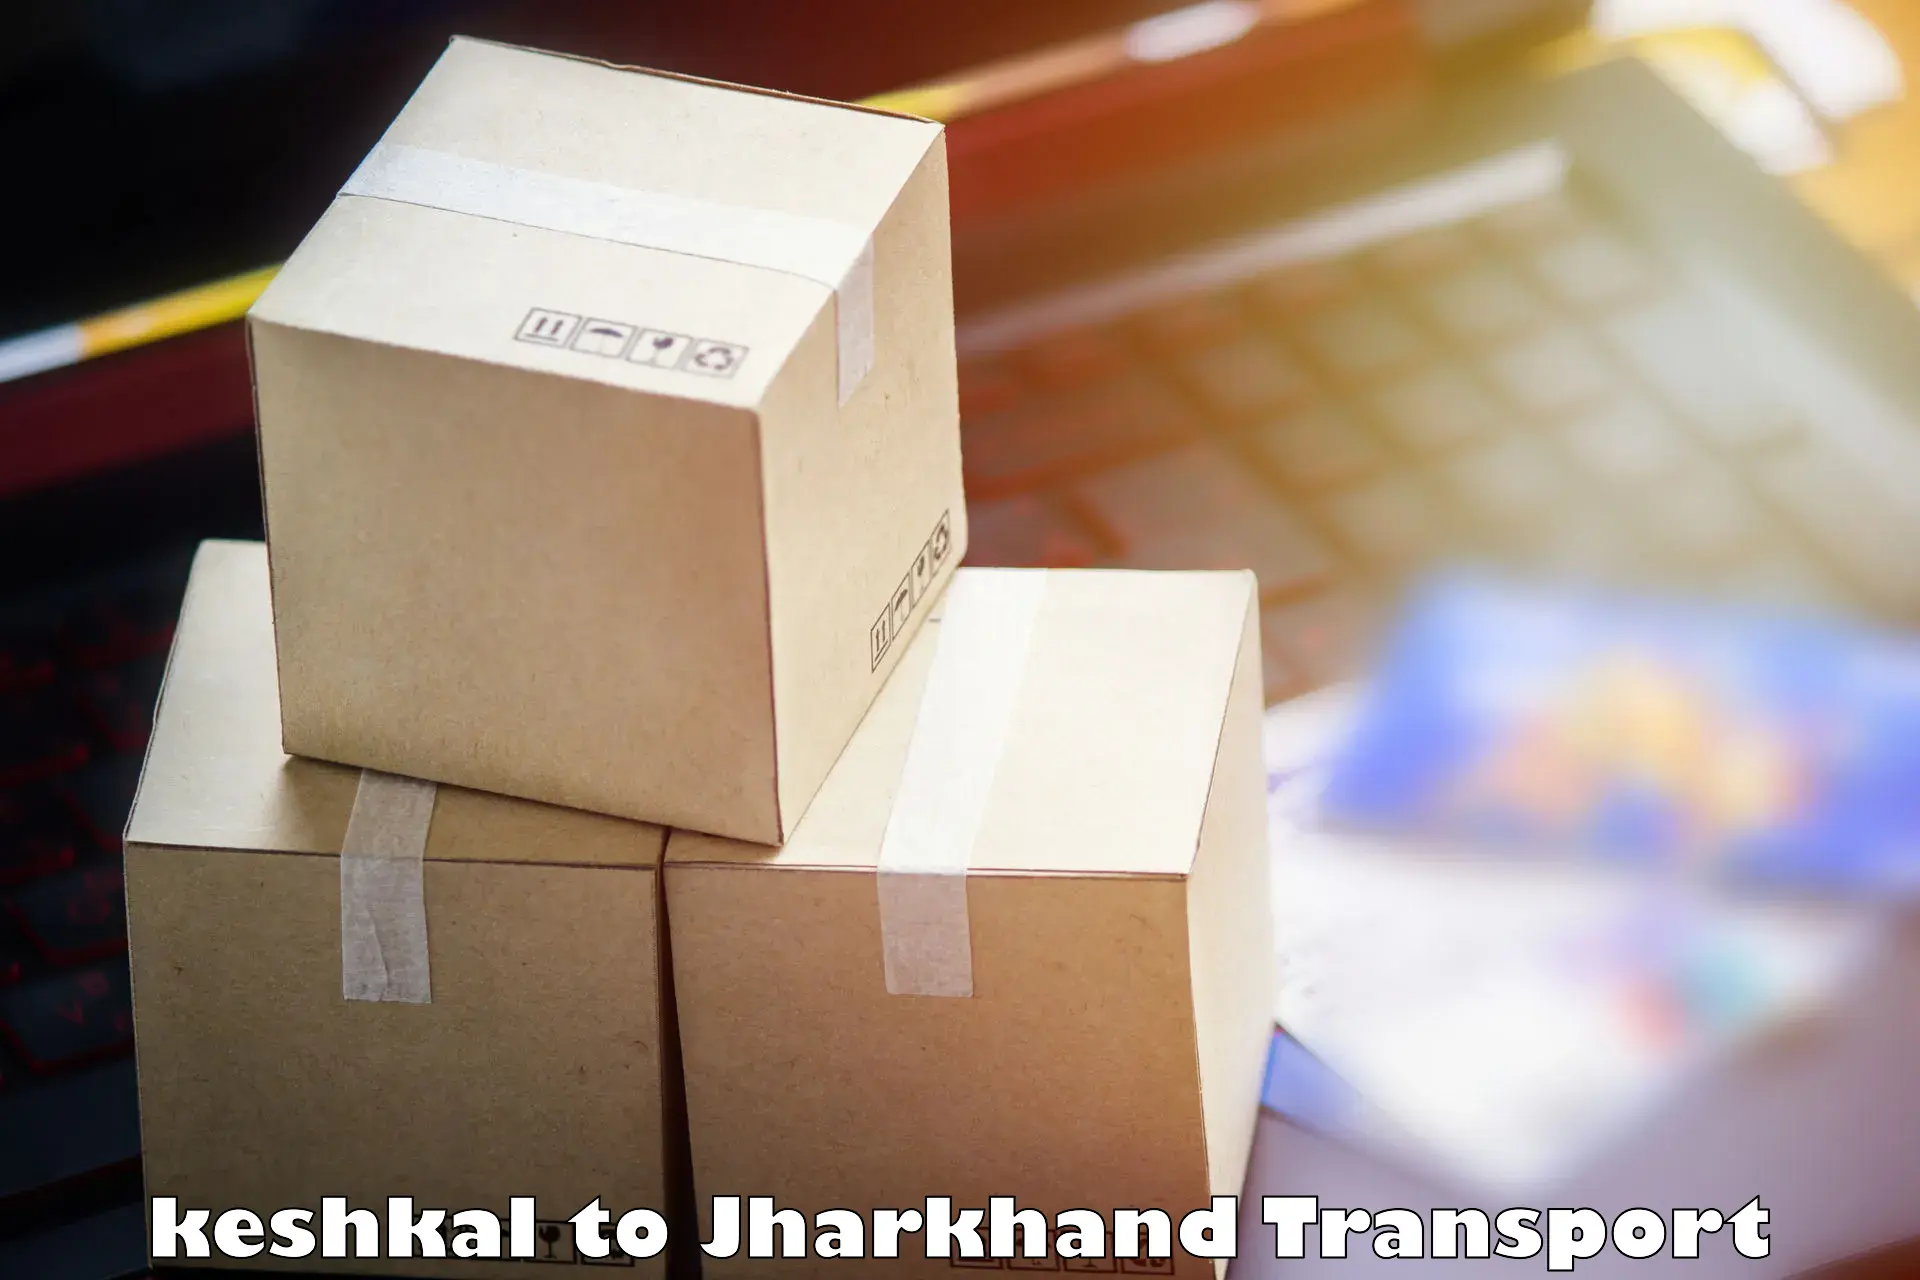 Daily parcel service transport keshkal to Bundu